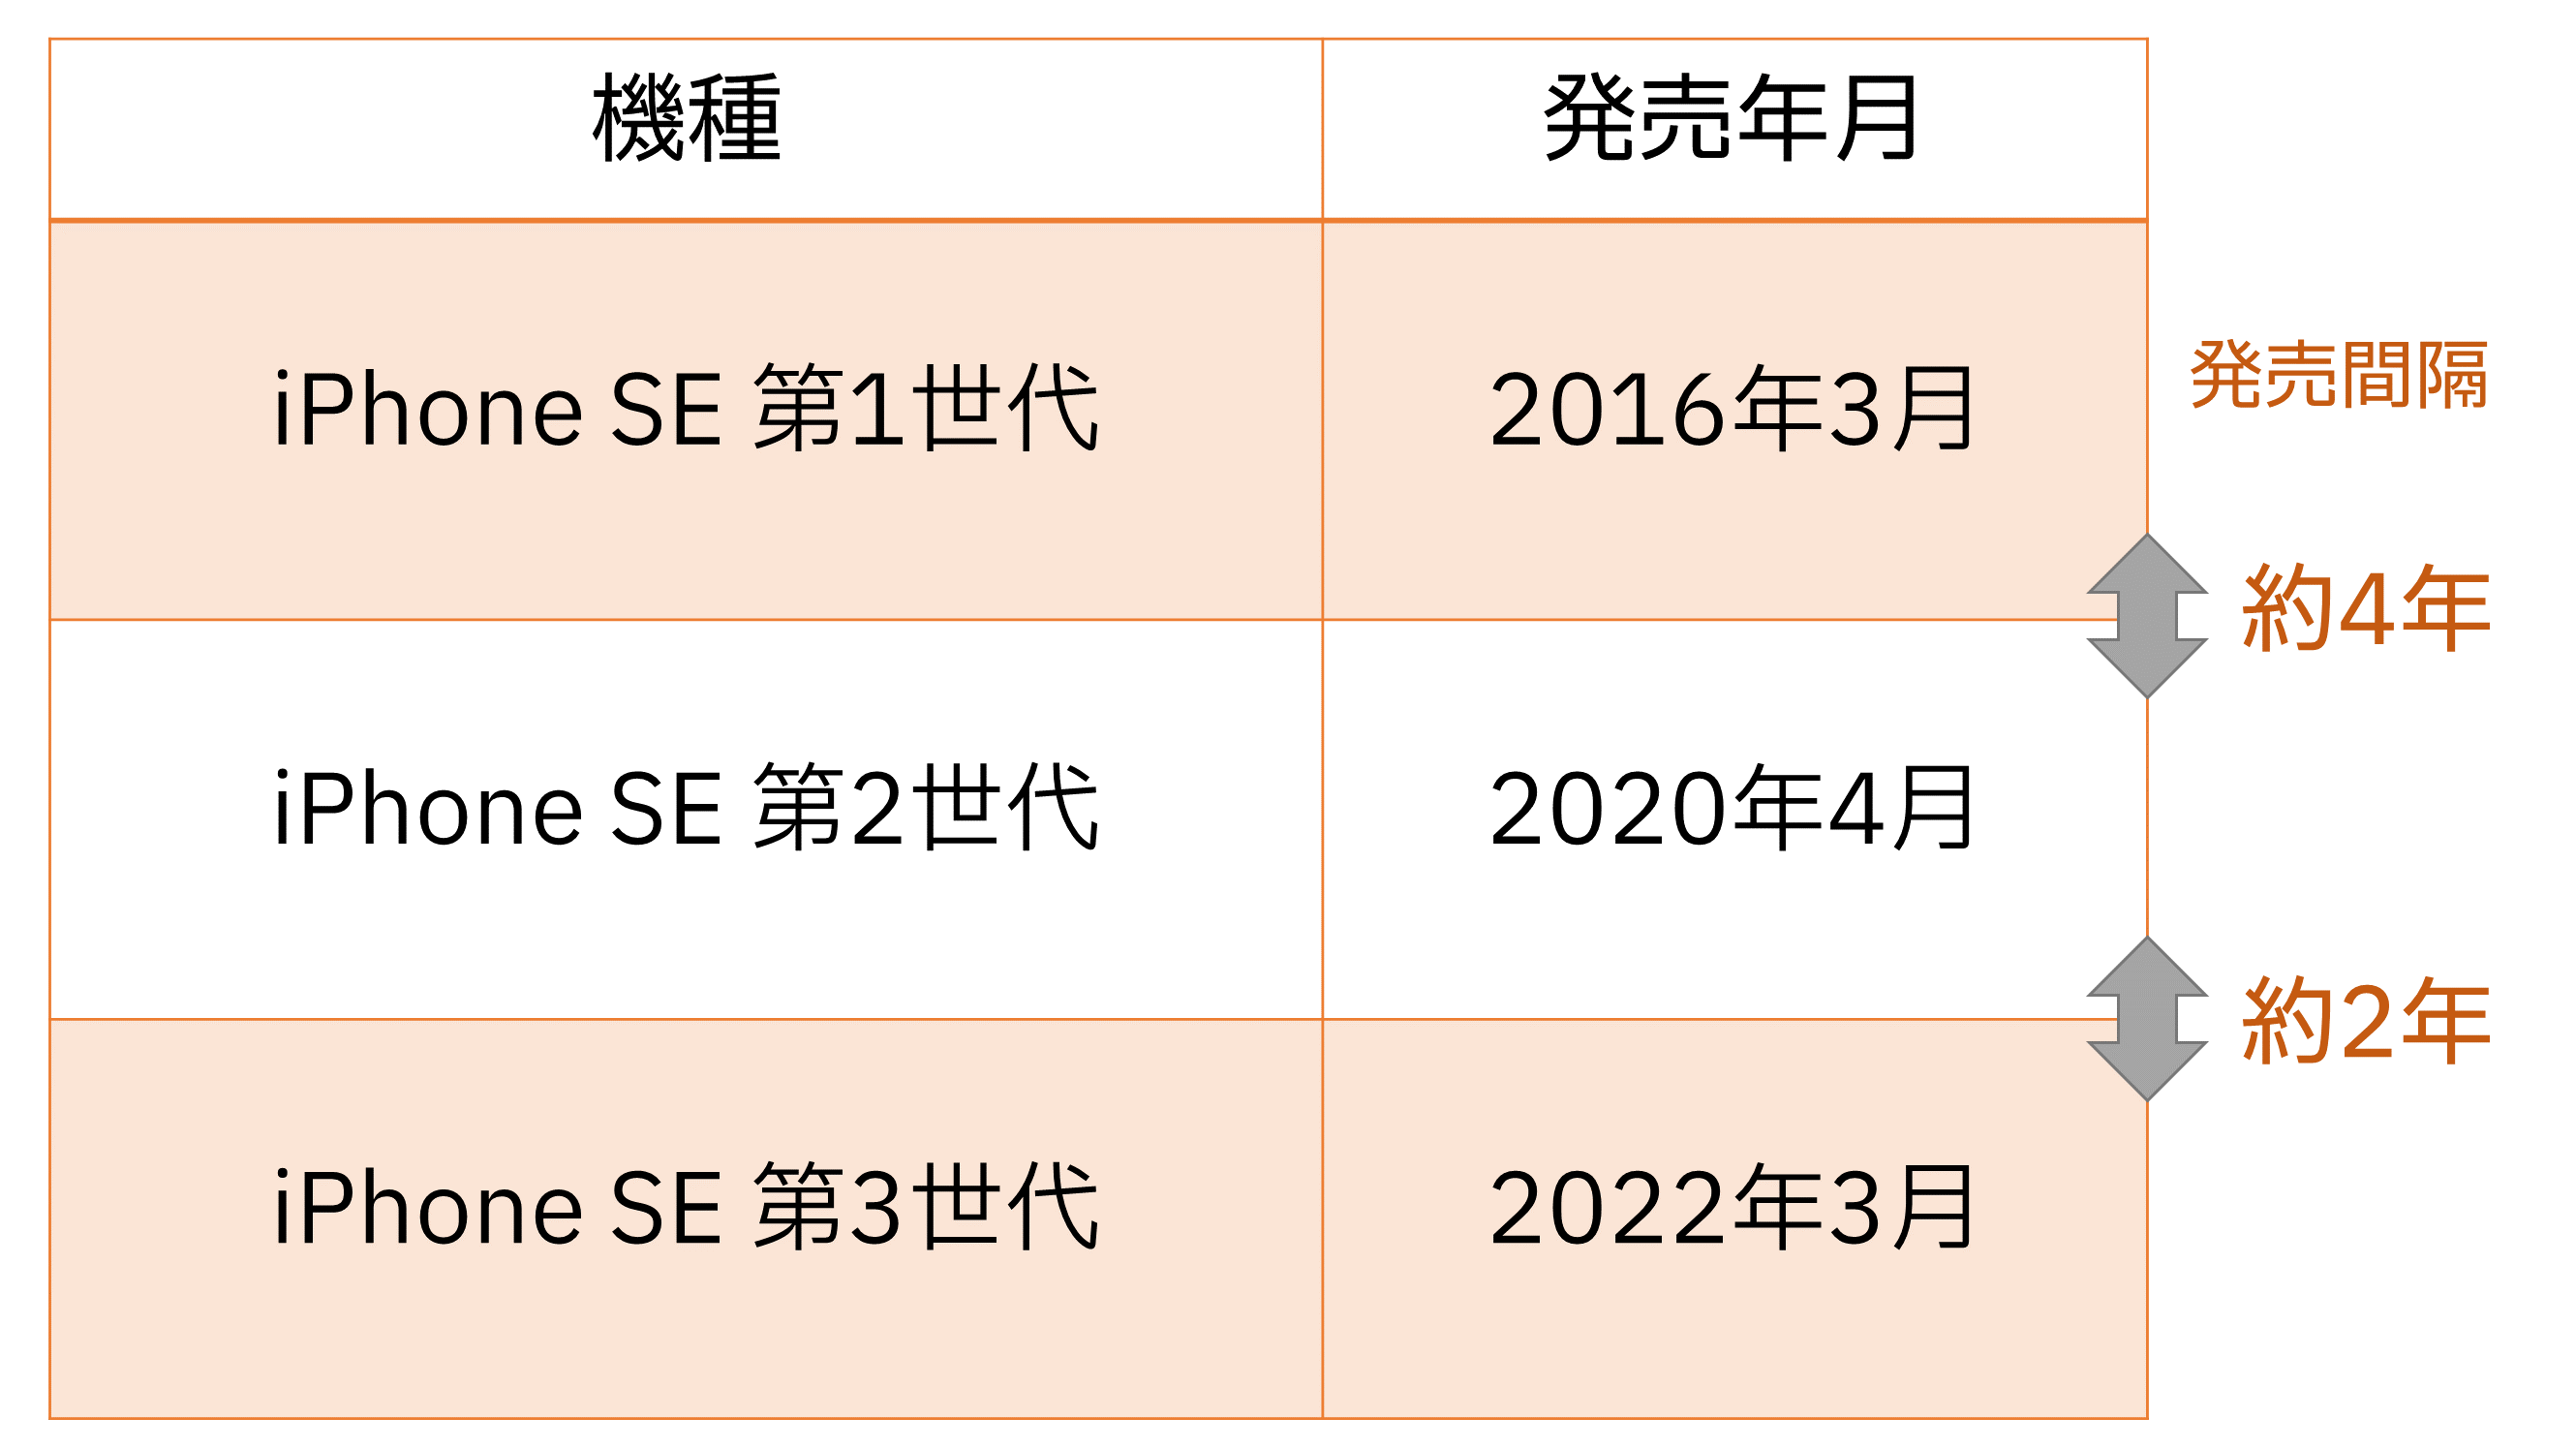 過去のiPhone SEシリーズの発売年月